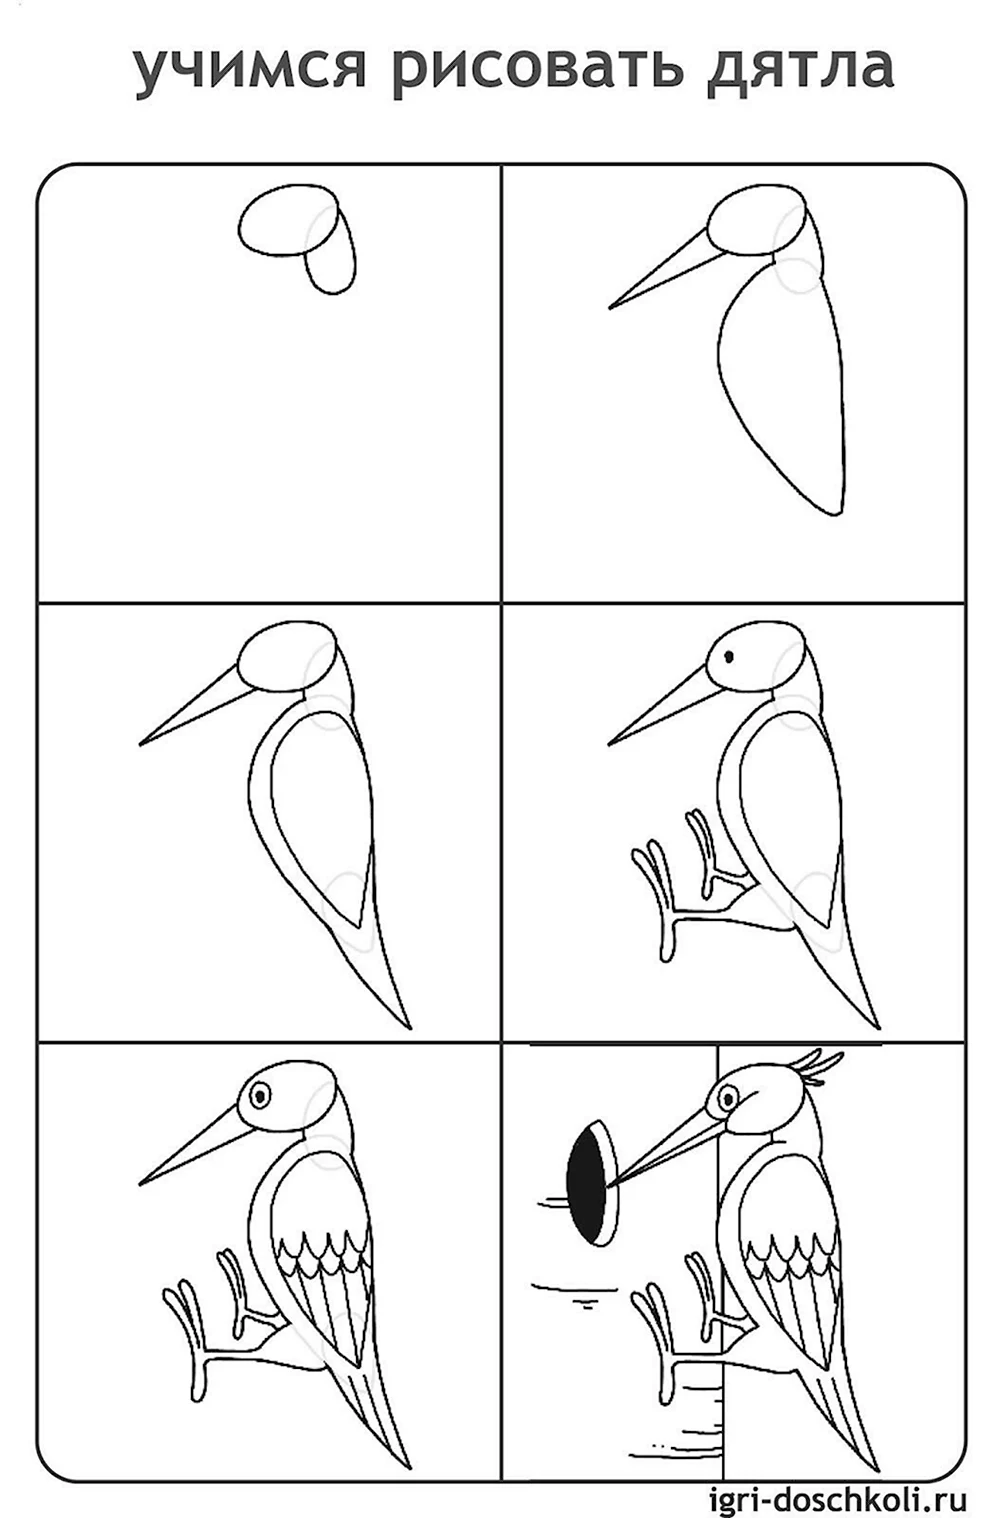 Как нарисовать дятла